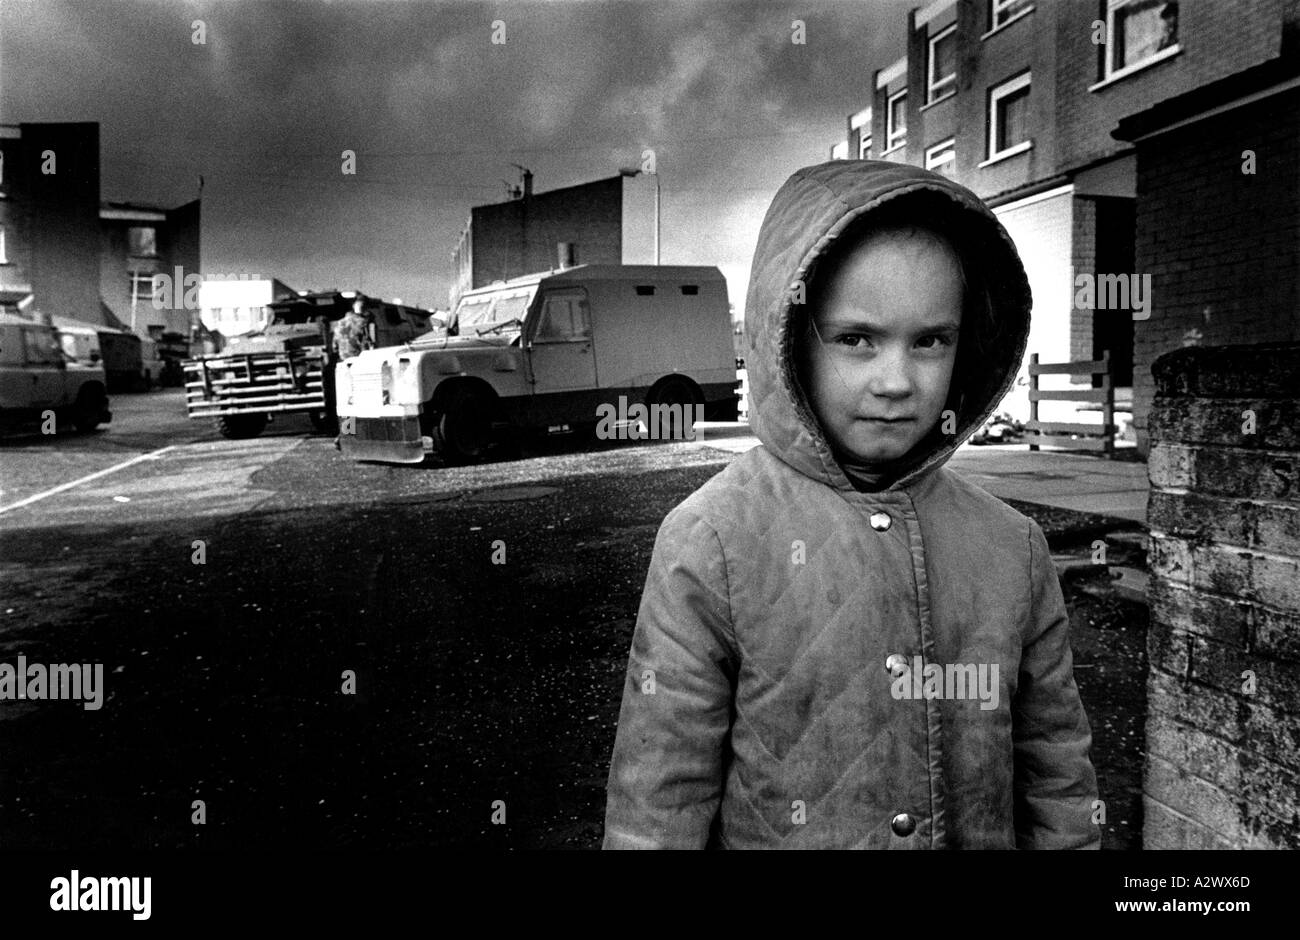 Un bambino sta in strada mentre una casa ricerca viene eseguita in background, Ballymurphy, Belfast, Irlanda del Nord Foto Stock